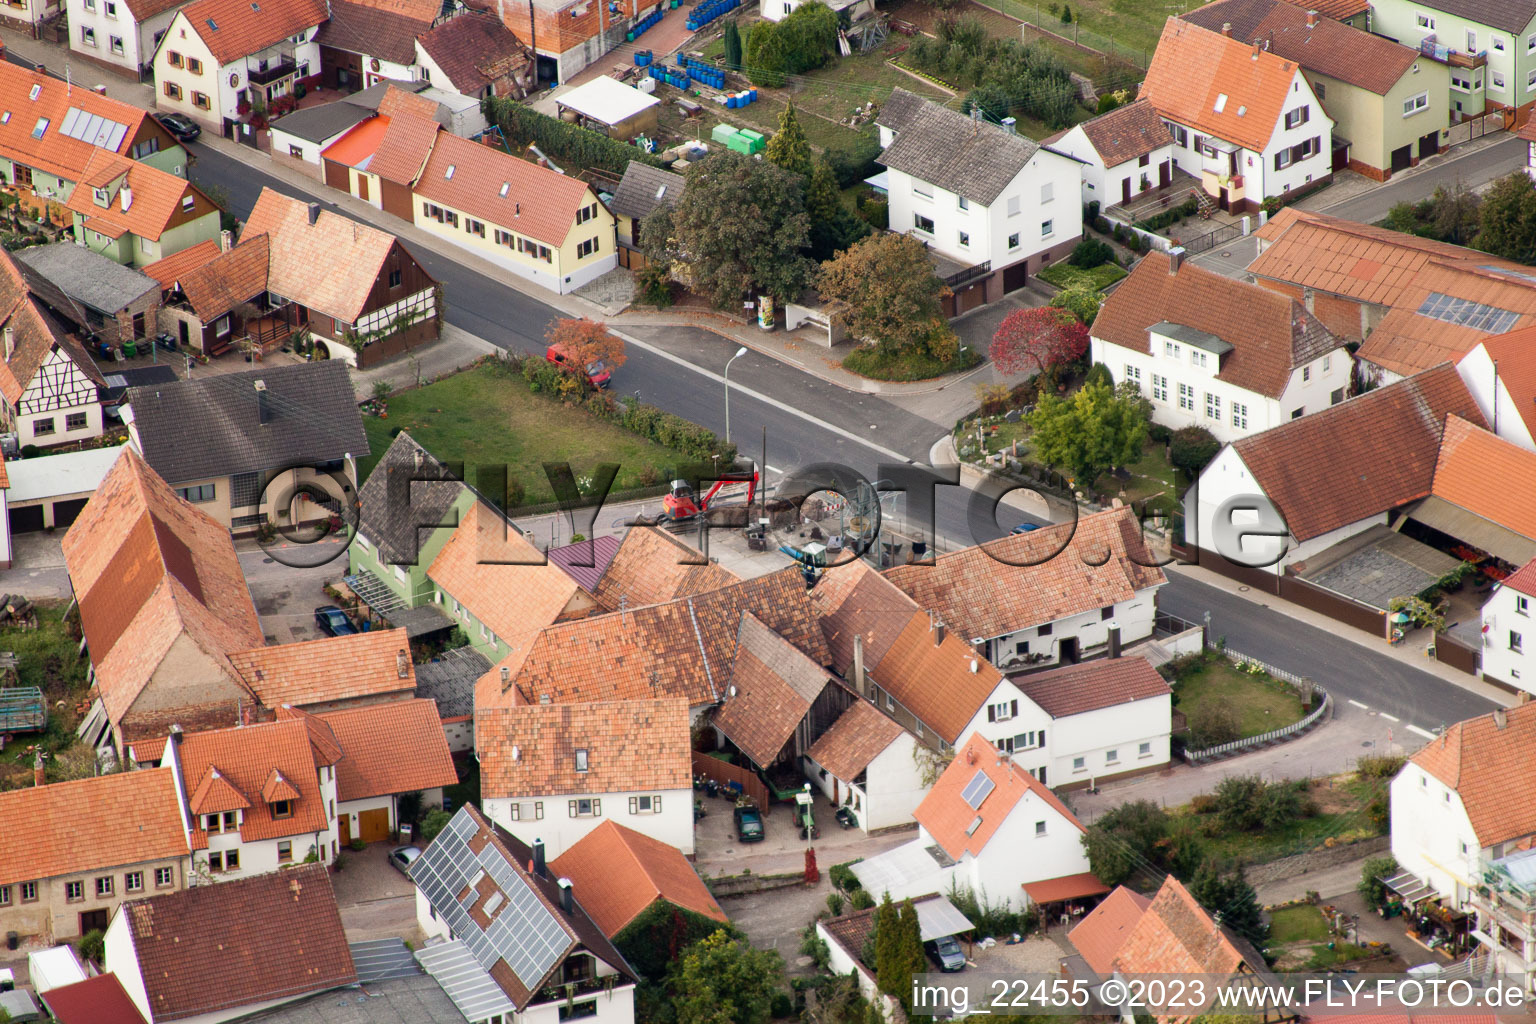 Drohnenbild von Ortsteil Rechtenbach in Schweigen-Rechtenbach im Bundesland Rheinland-Pfalz, Deutschland